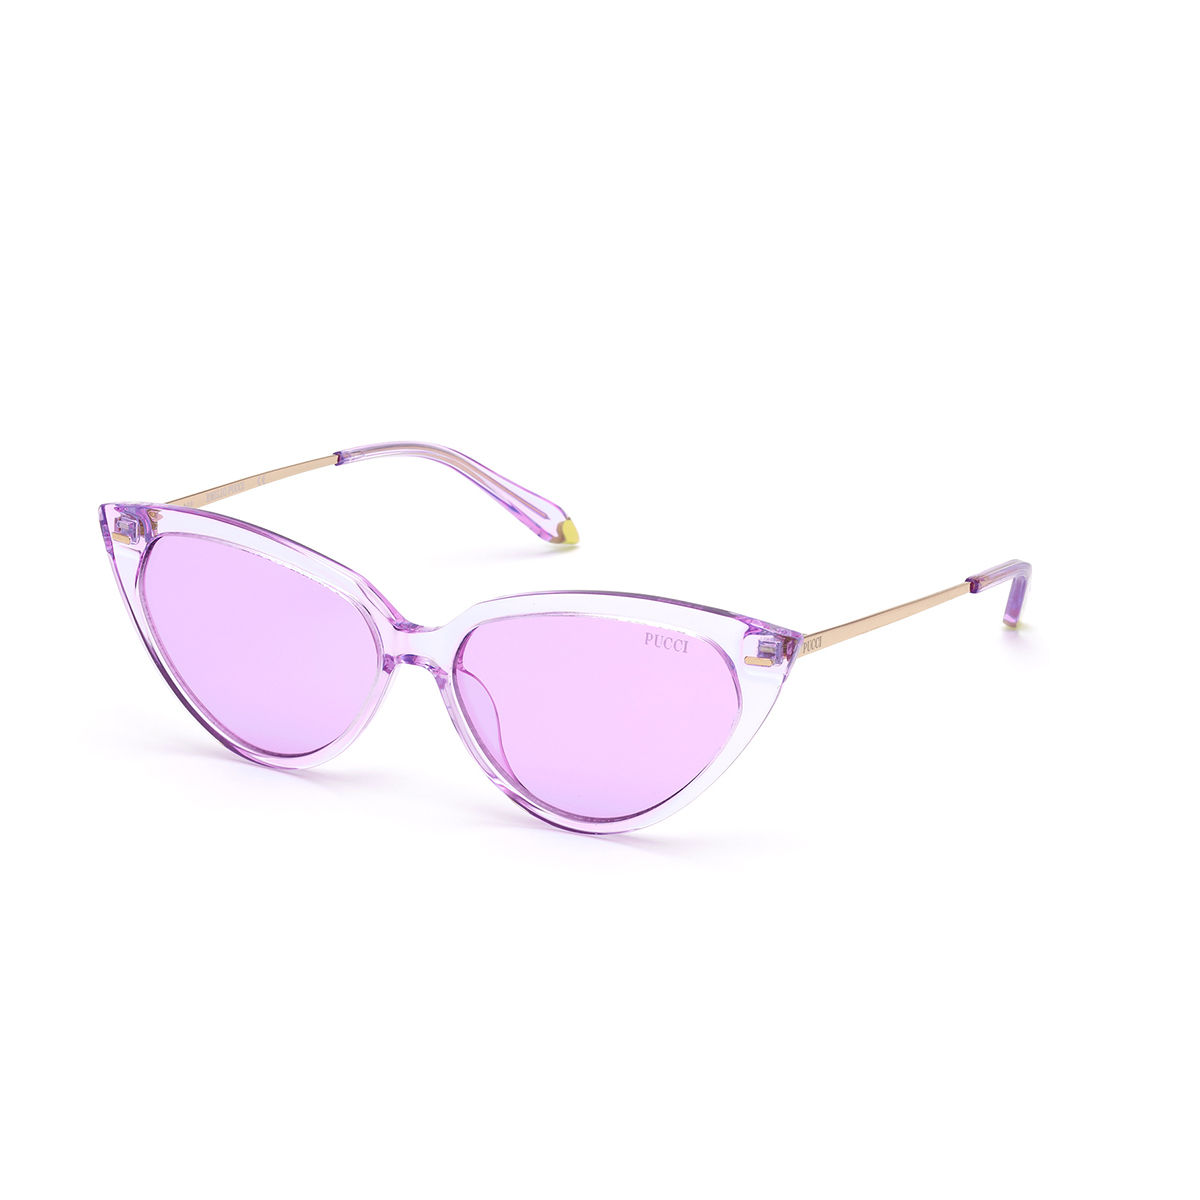 Sunglasses Emilio Pucci EP 16 EP0016 81Y shiny violet / violet